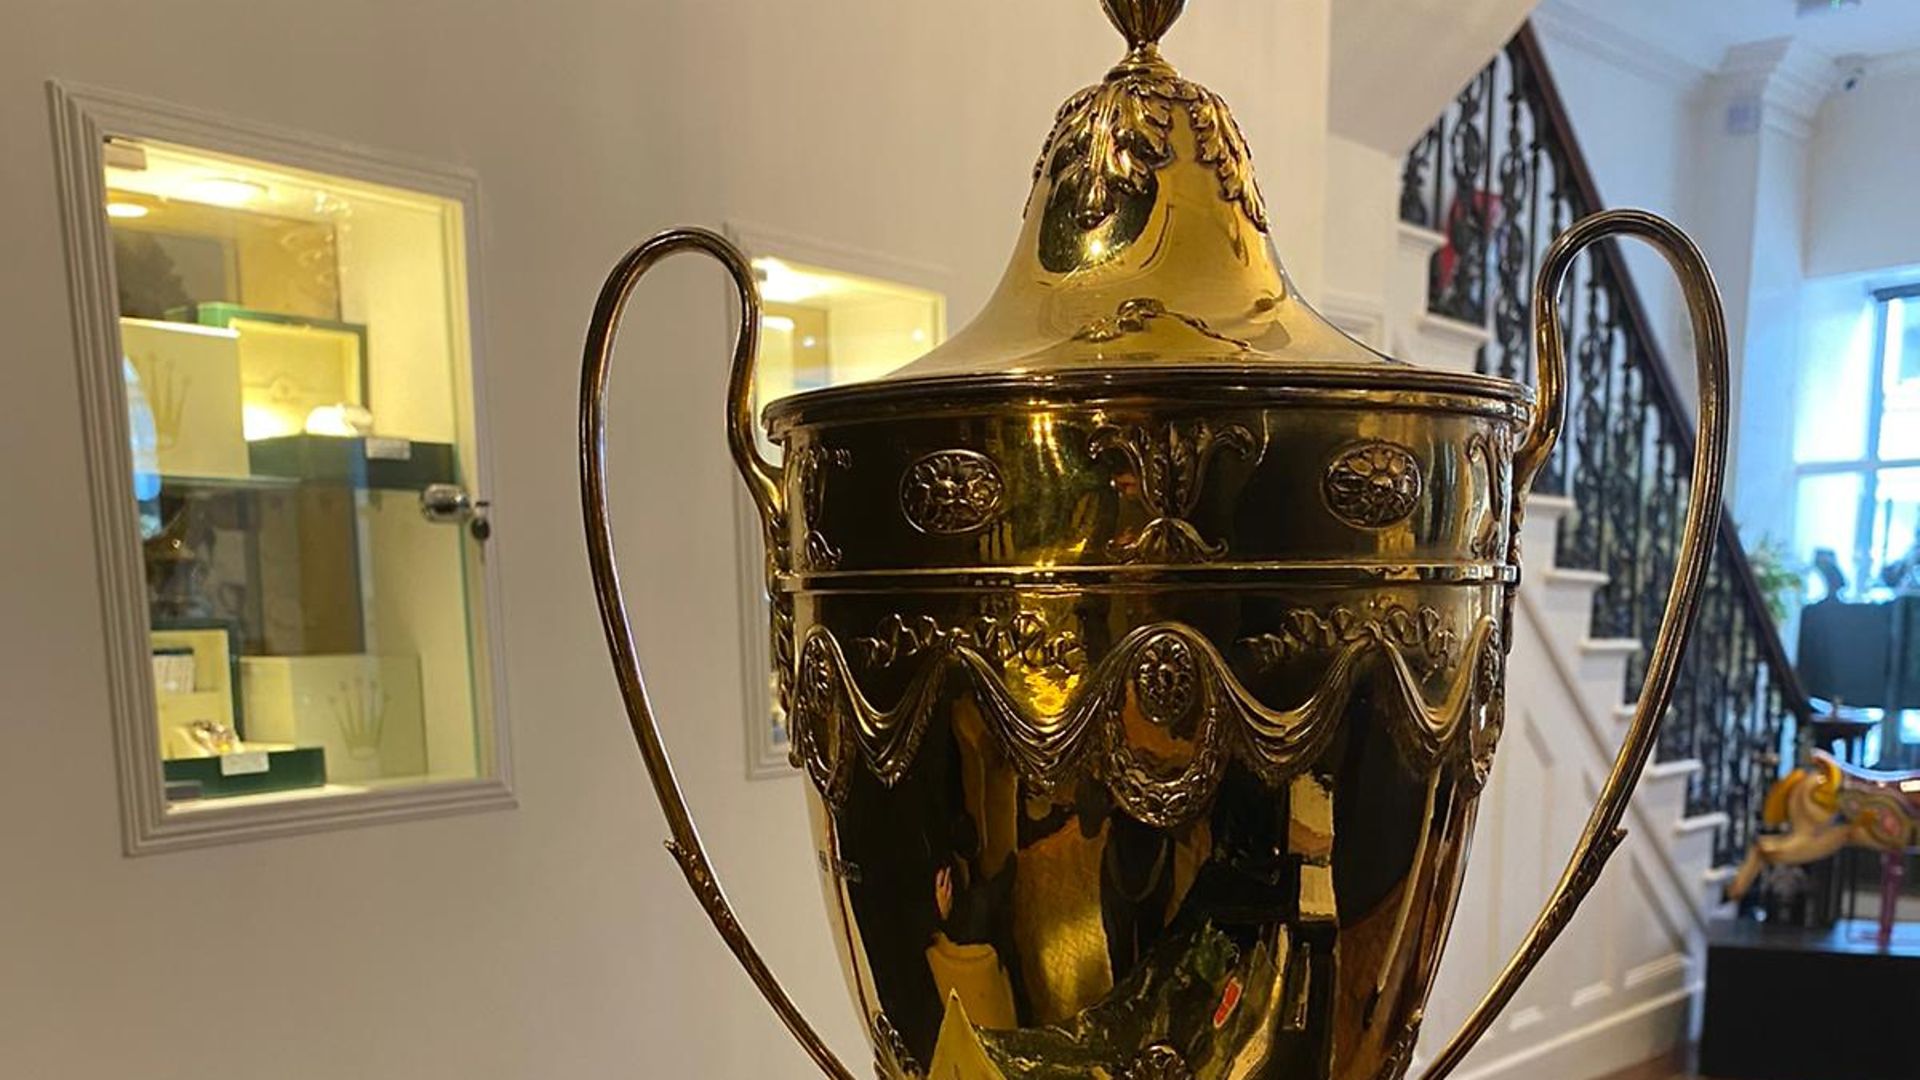 Wonders of the Waterloo Cup